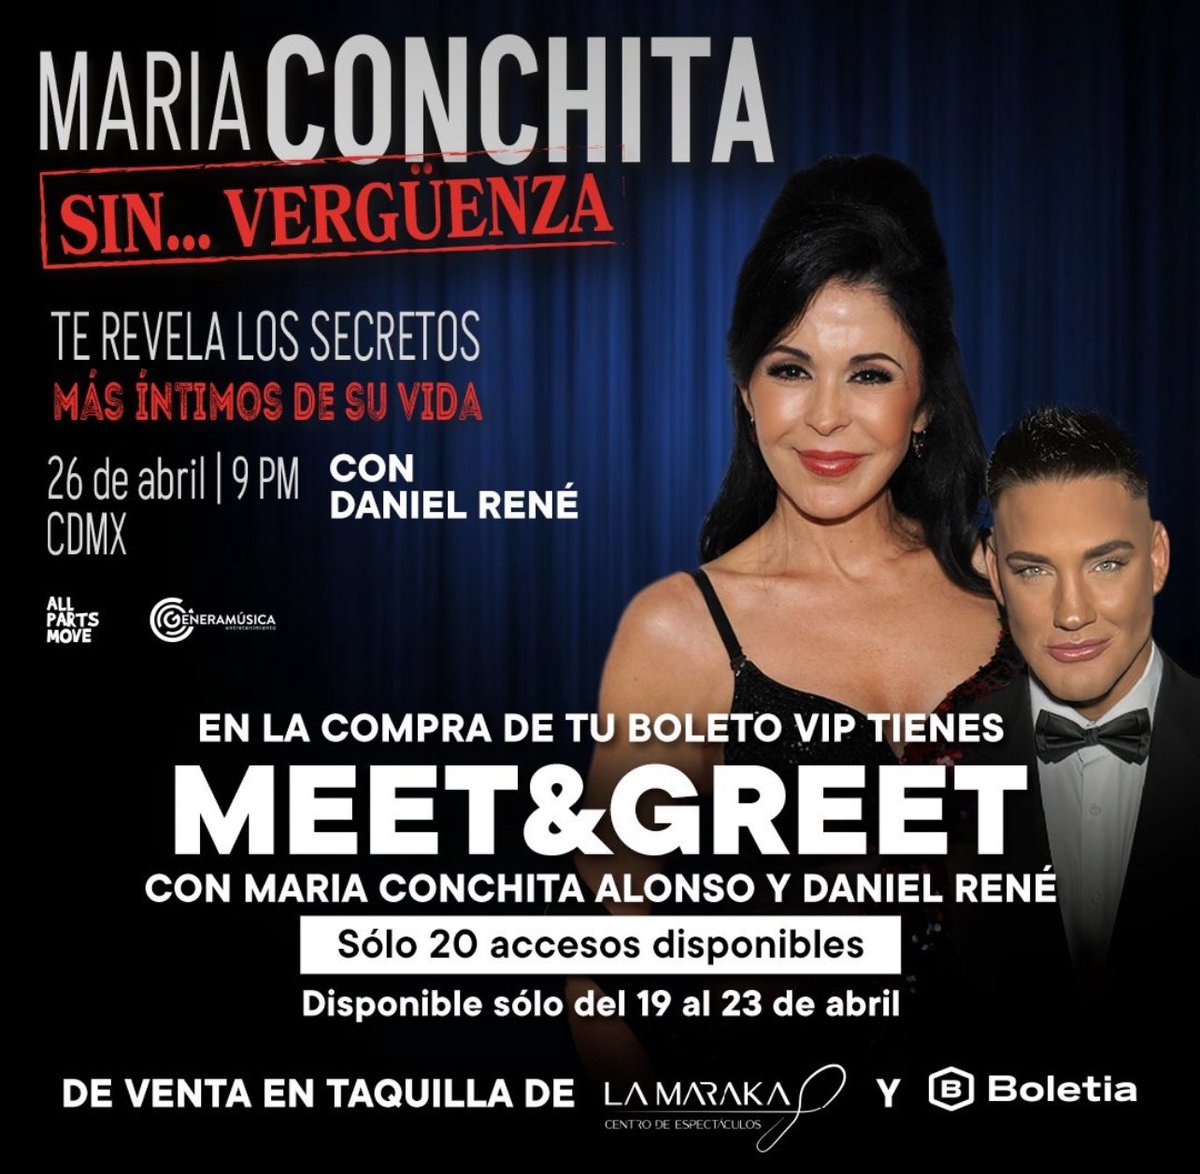 Imperdible el Meet & Greet con @MariaConchita_A en el Salón La Maraka! @Allpartsmove @GeneraMusica